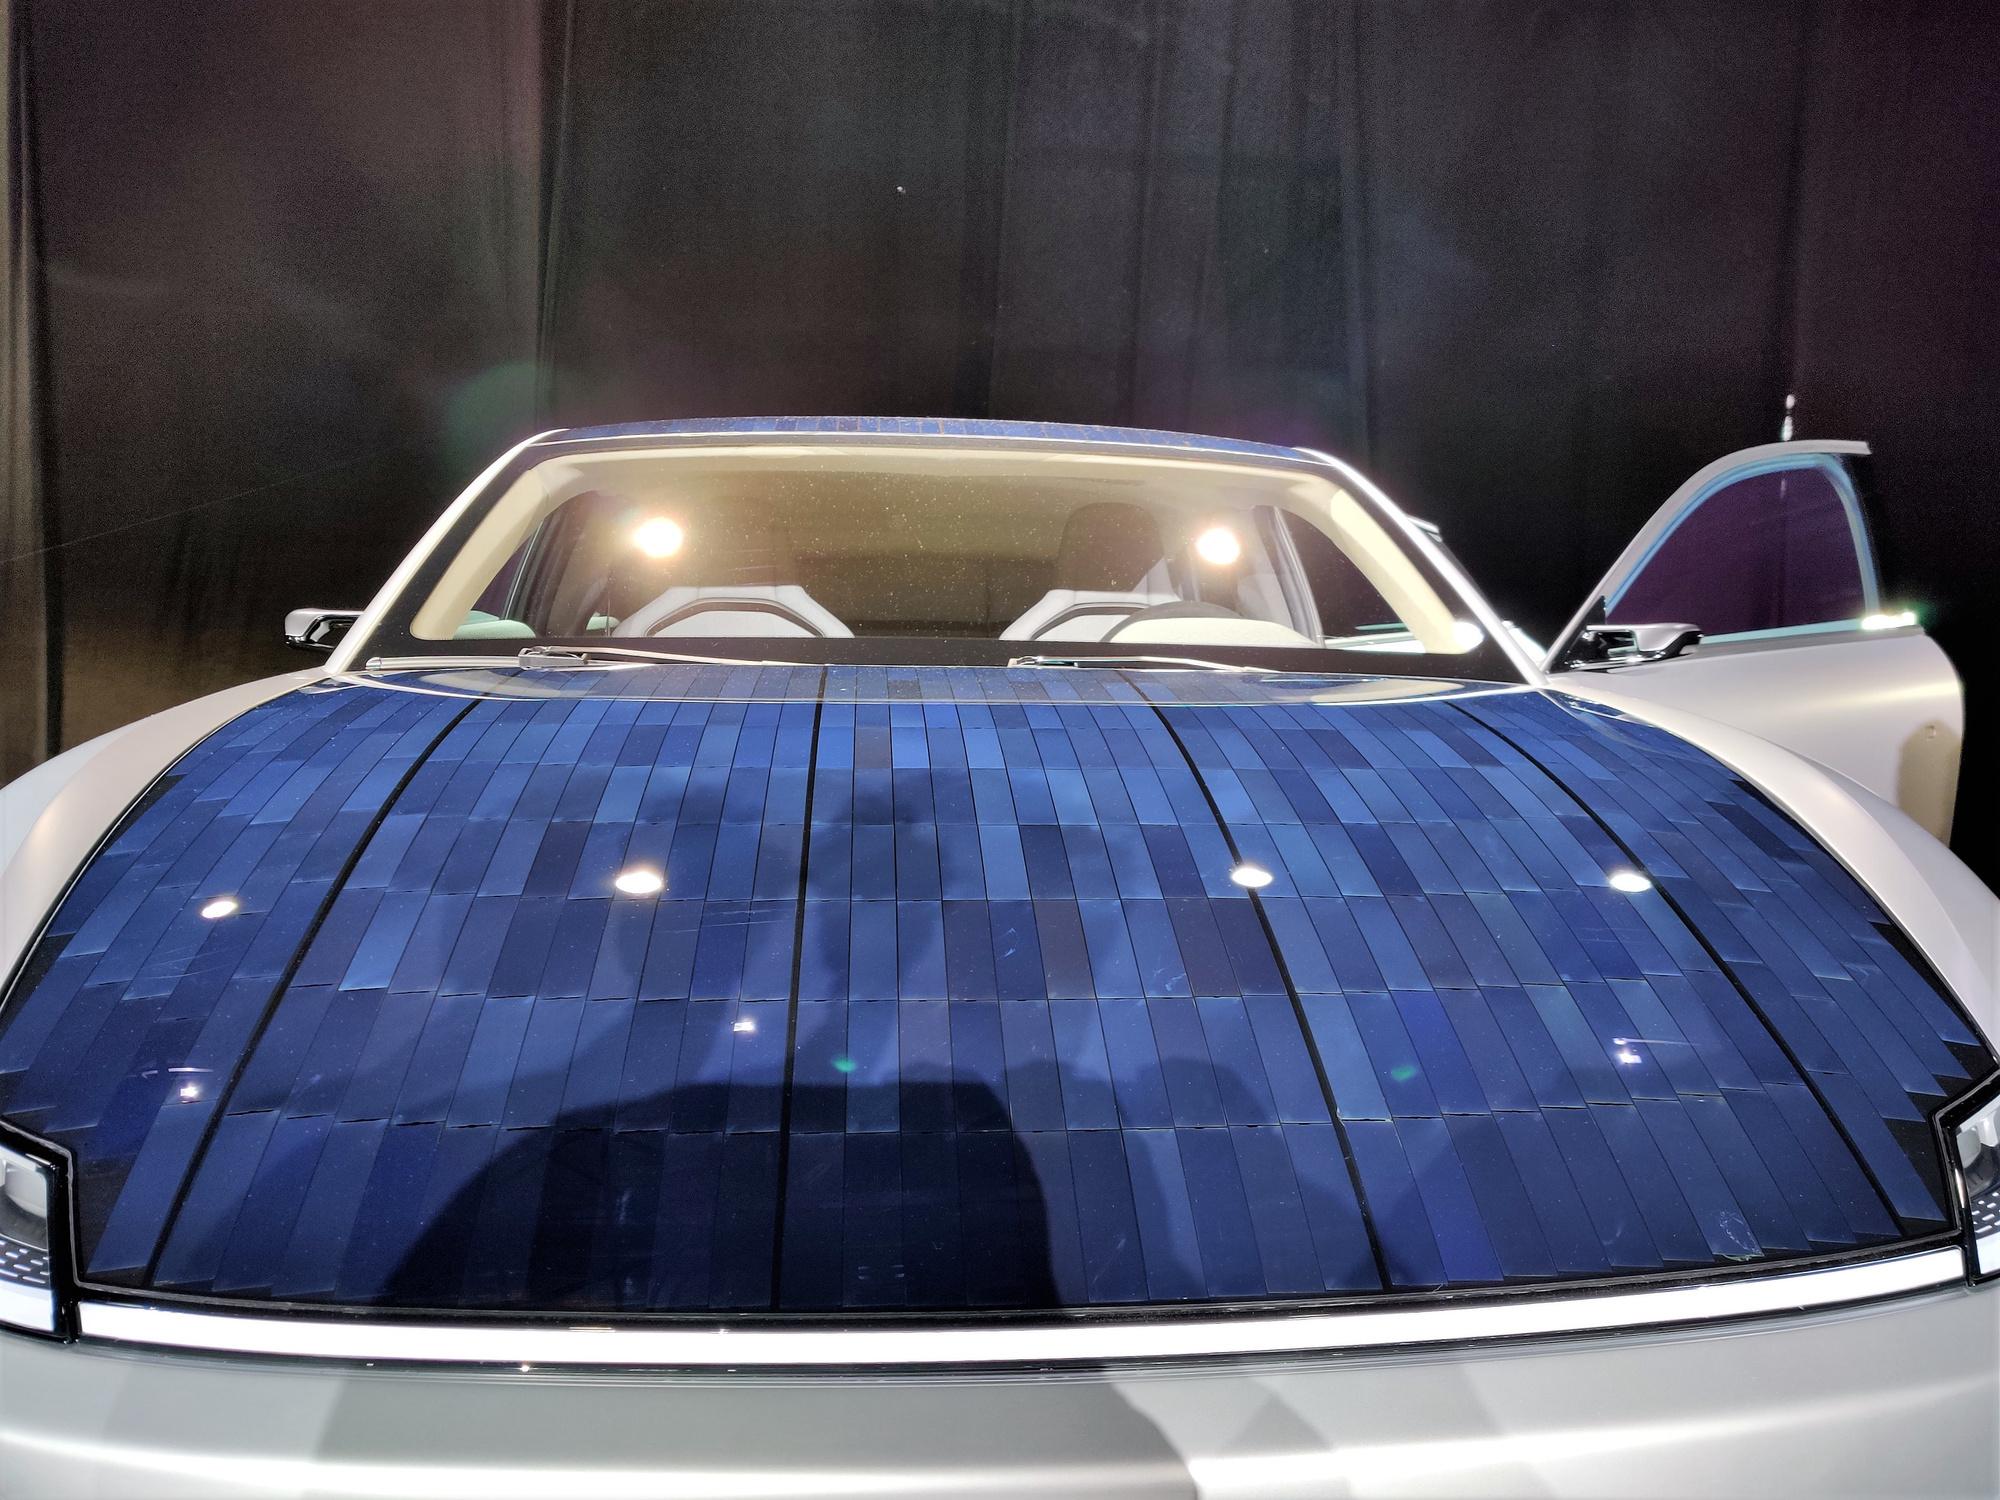 En faisant collaborer de manière optimale les panneaux solaires placés sur le toit bombé de la voiture, celle-ci peut permettre de parcourir 50 à 70 kilomètres supplémentaires par jour.